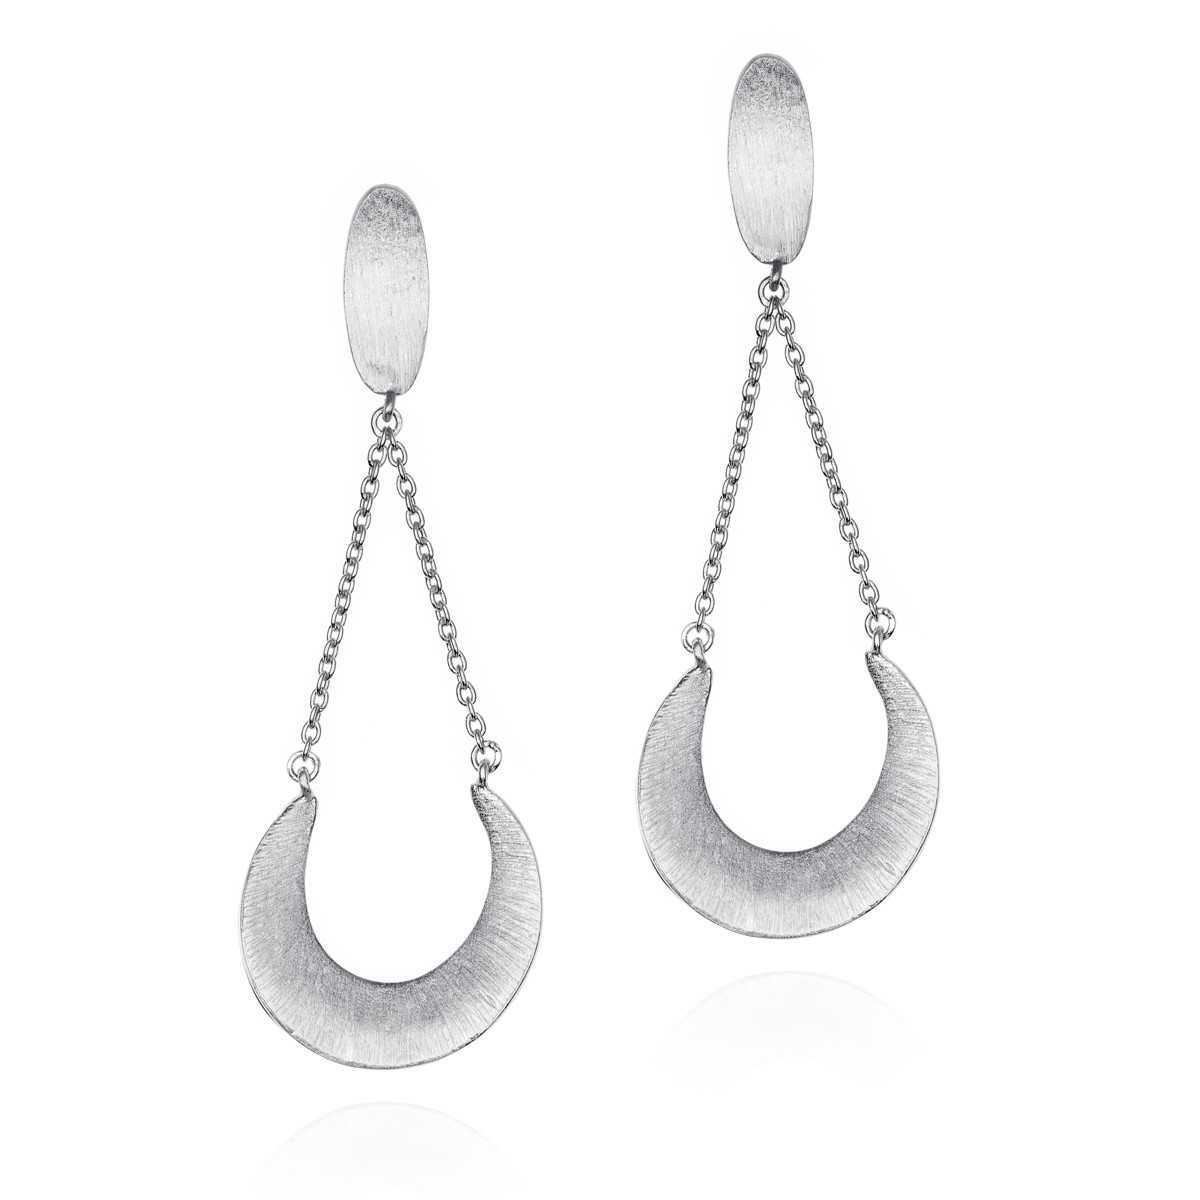 ODYSSEY Earrings  in Silver.